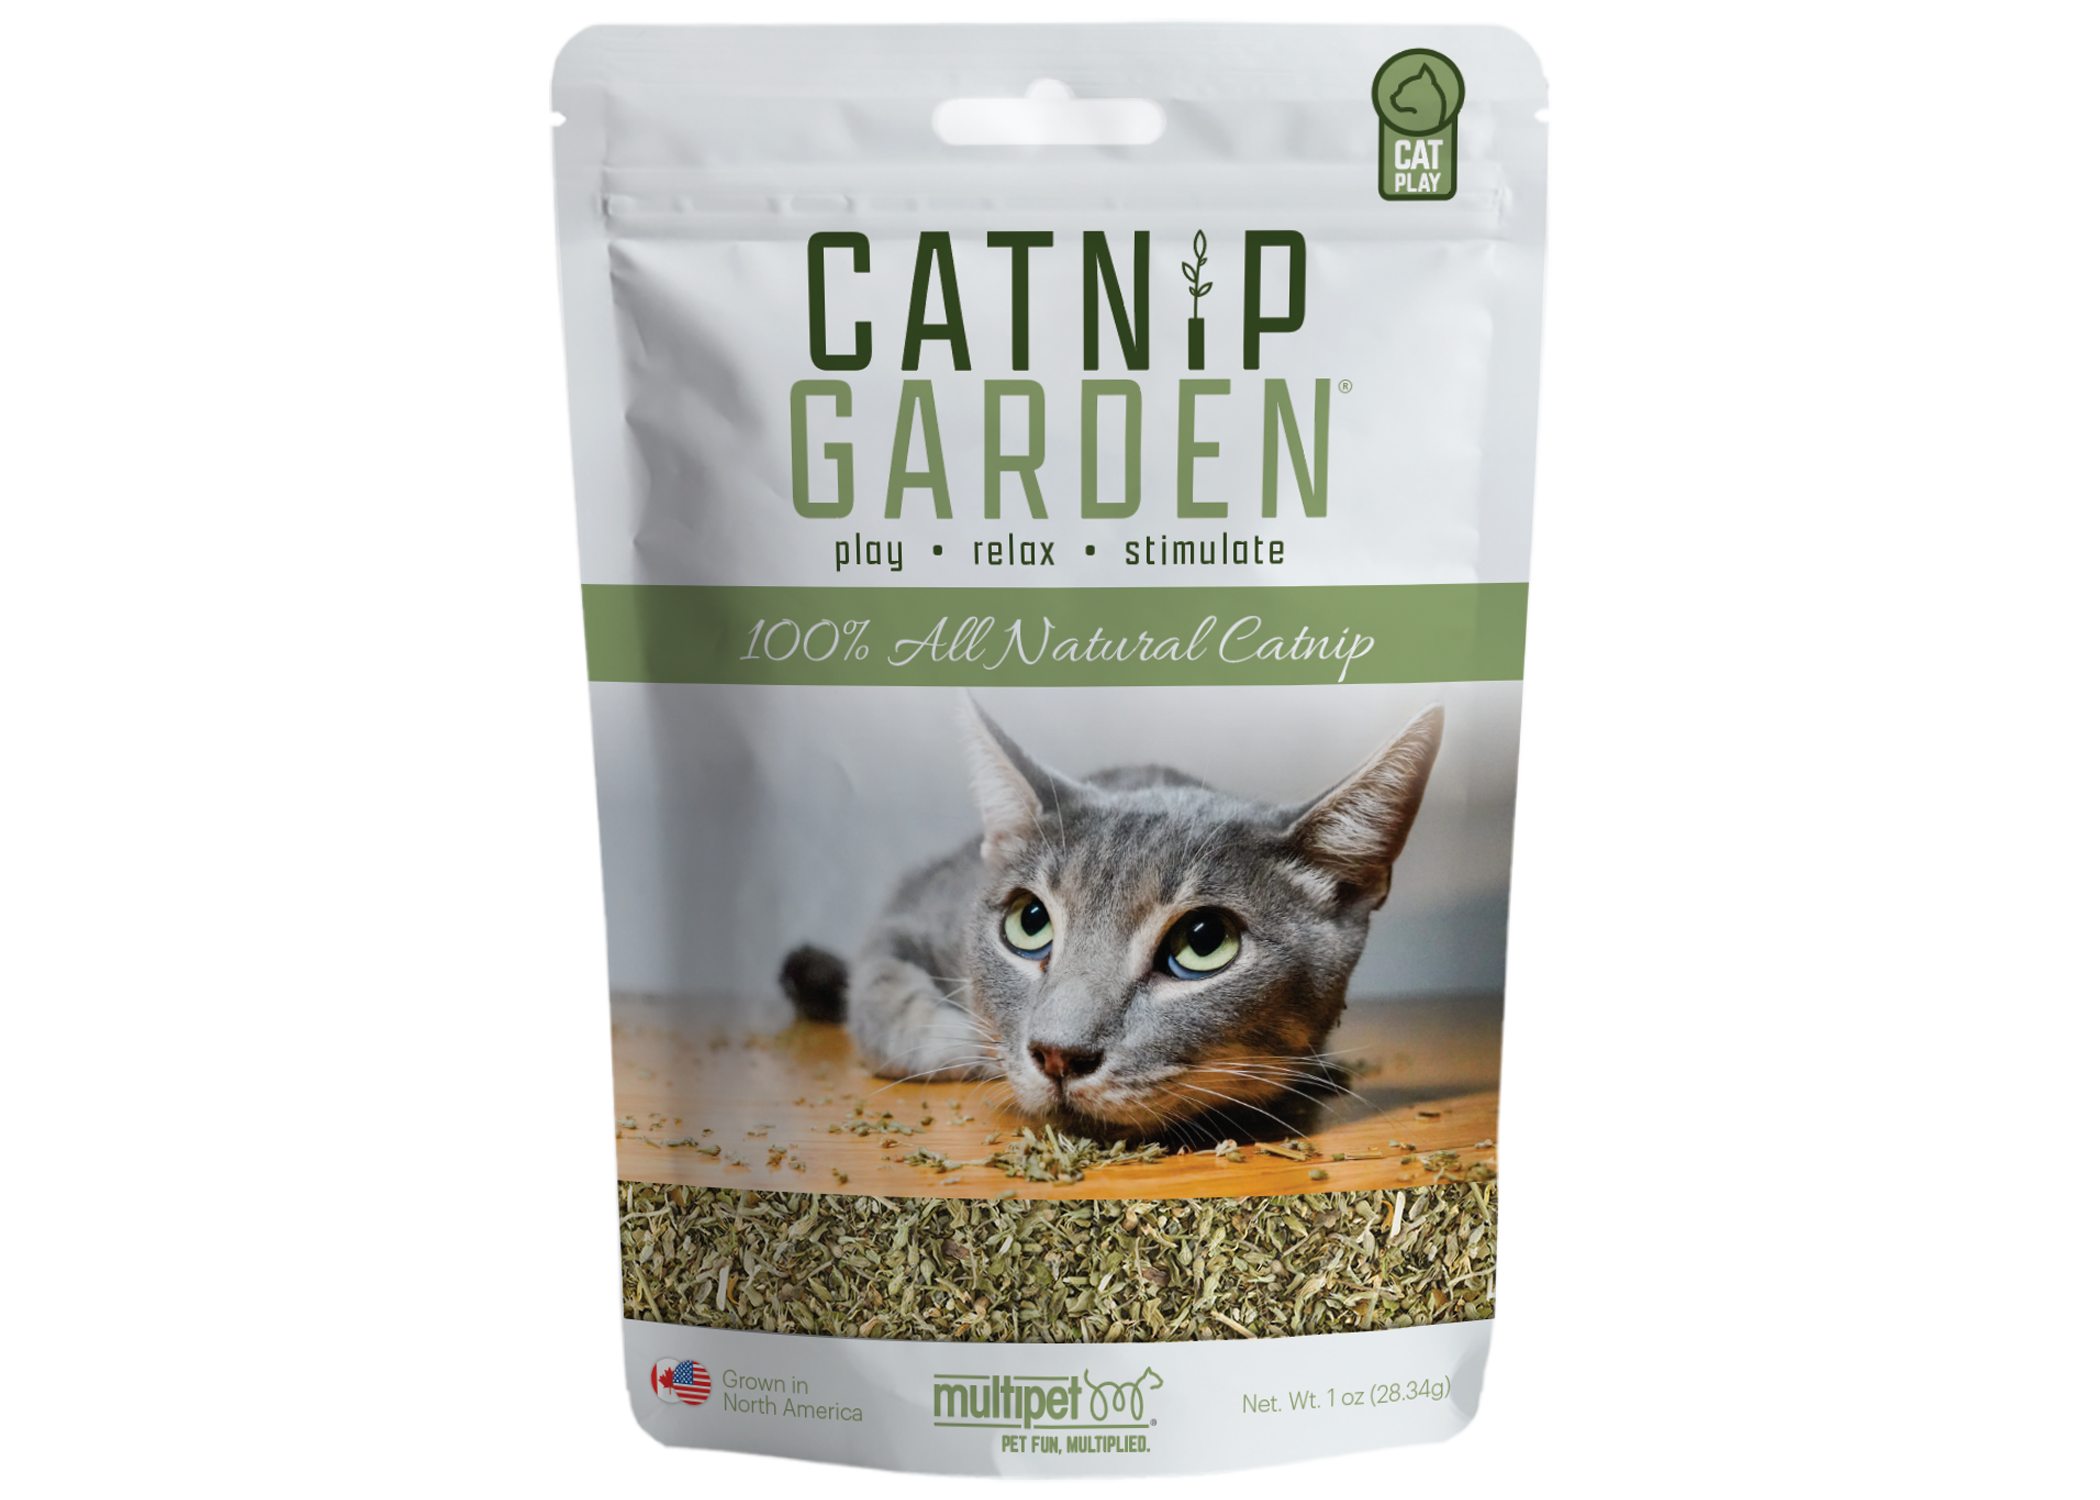 Catnip garden® herbe à chat naturelle en sachet — Boutiques d